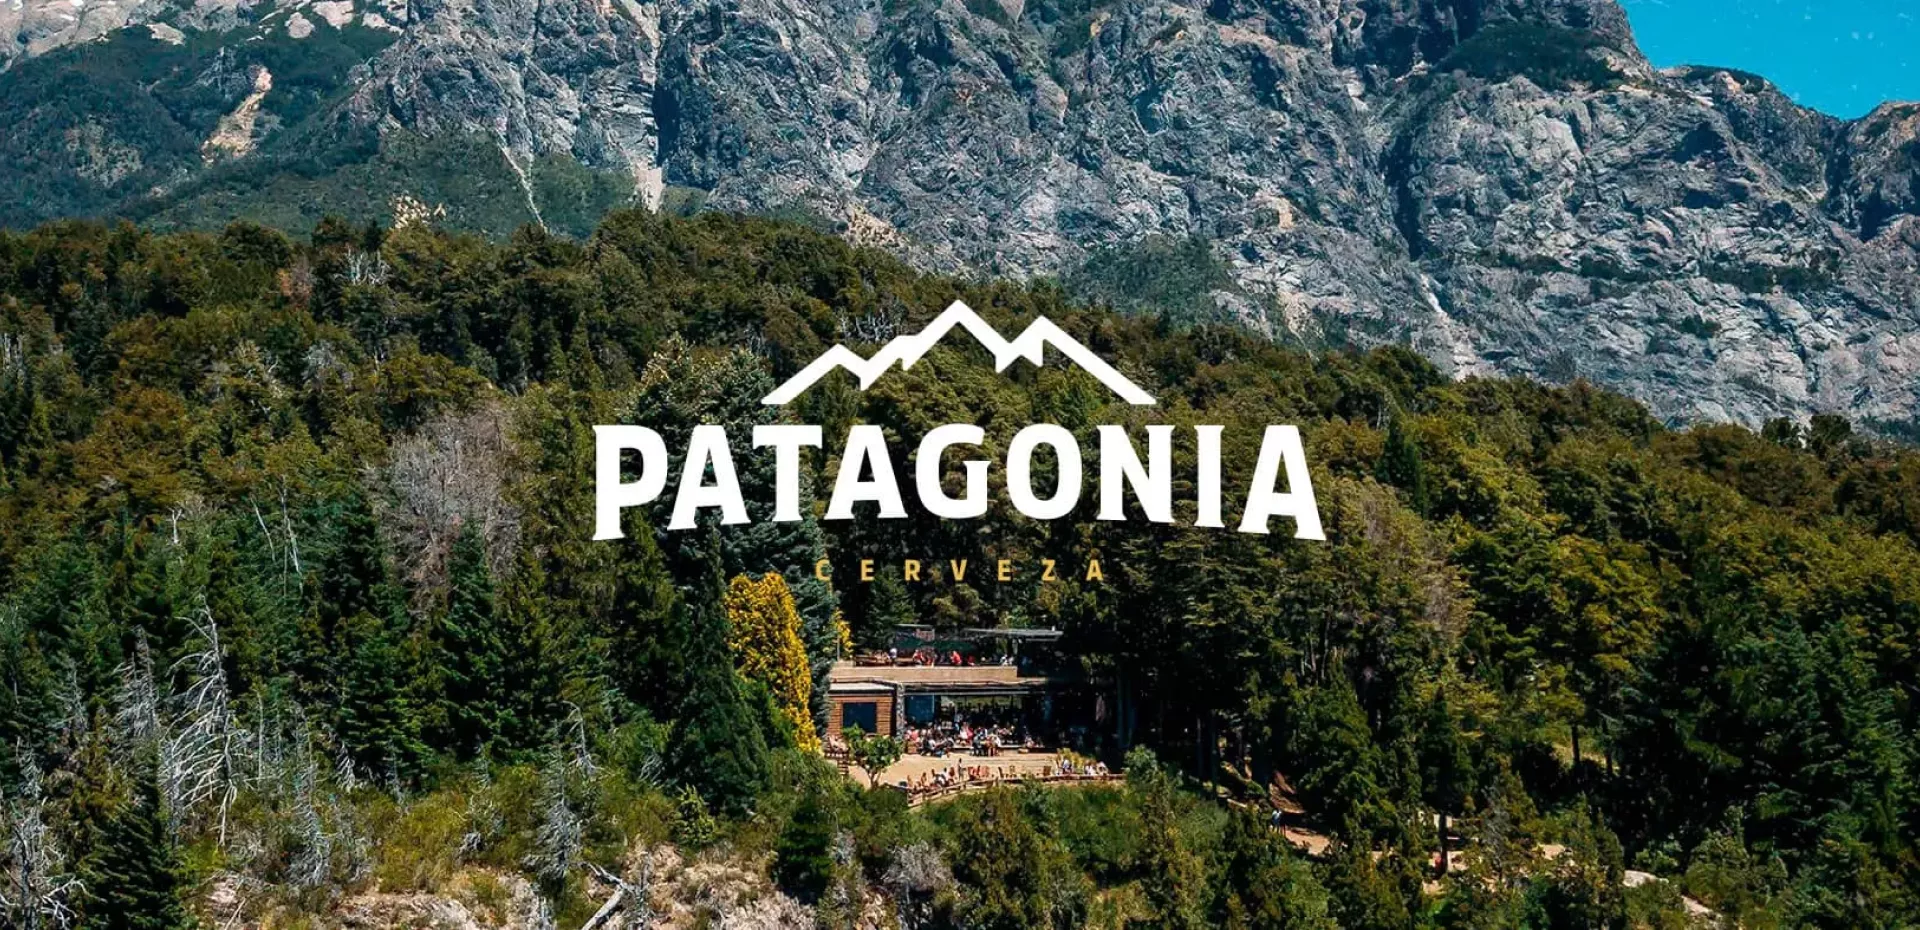 Cerveja Patagonia inaugura seu primeiro bar no Brasil - Acontecendo Aqui